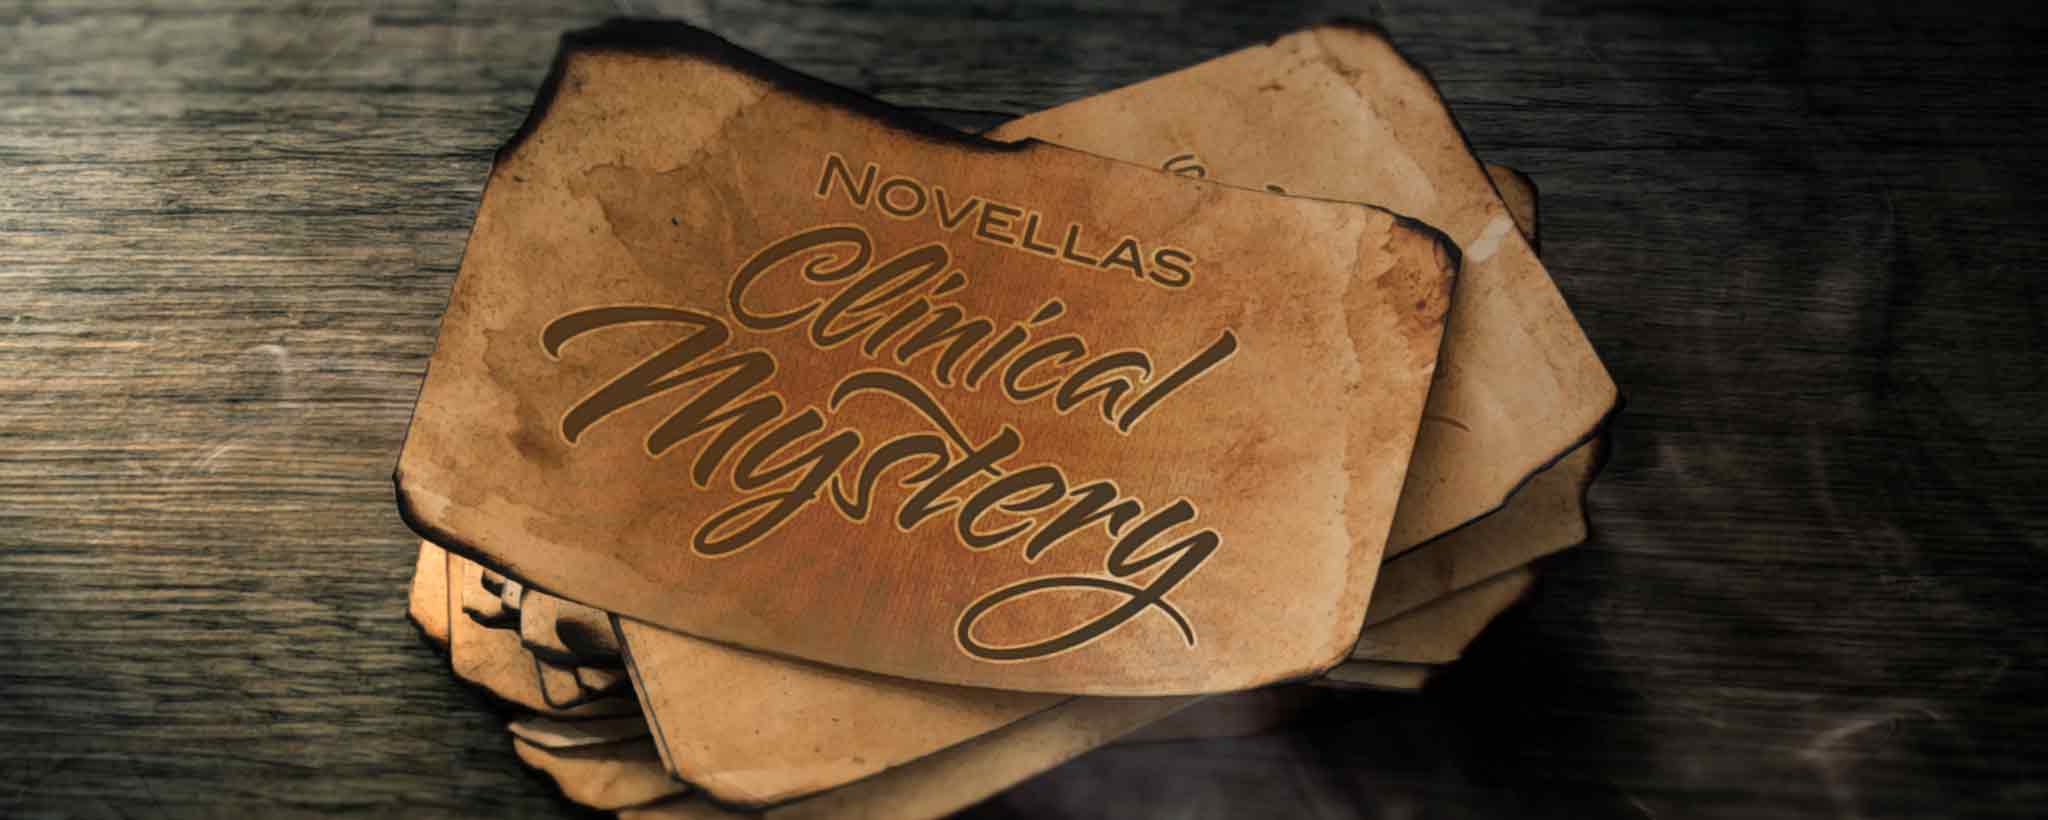 'Novellas Clinical Mystery'